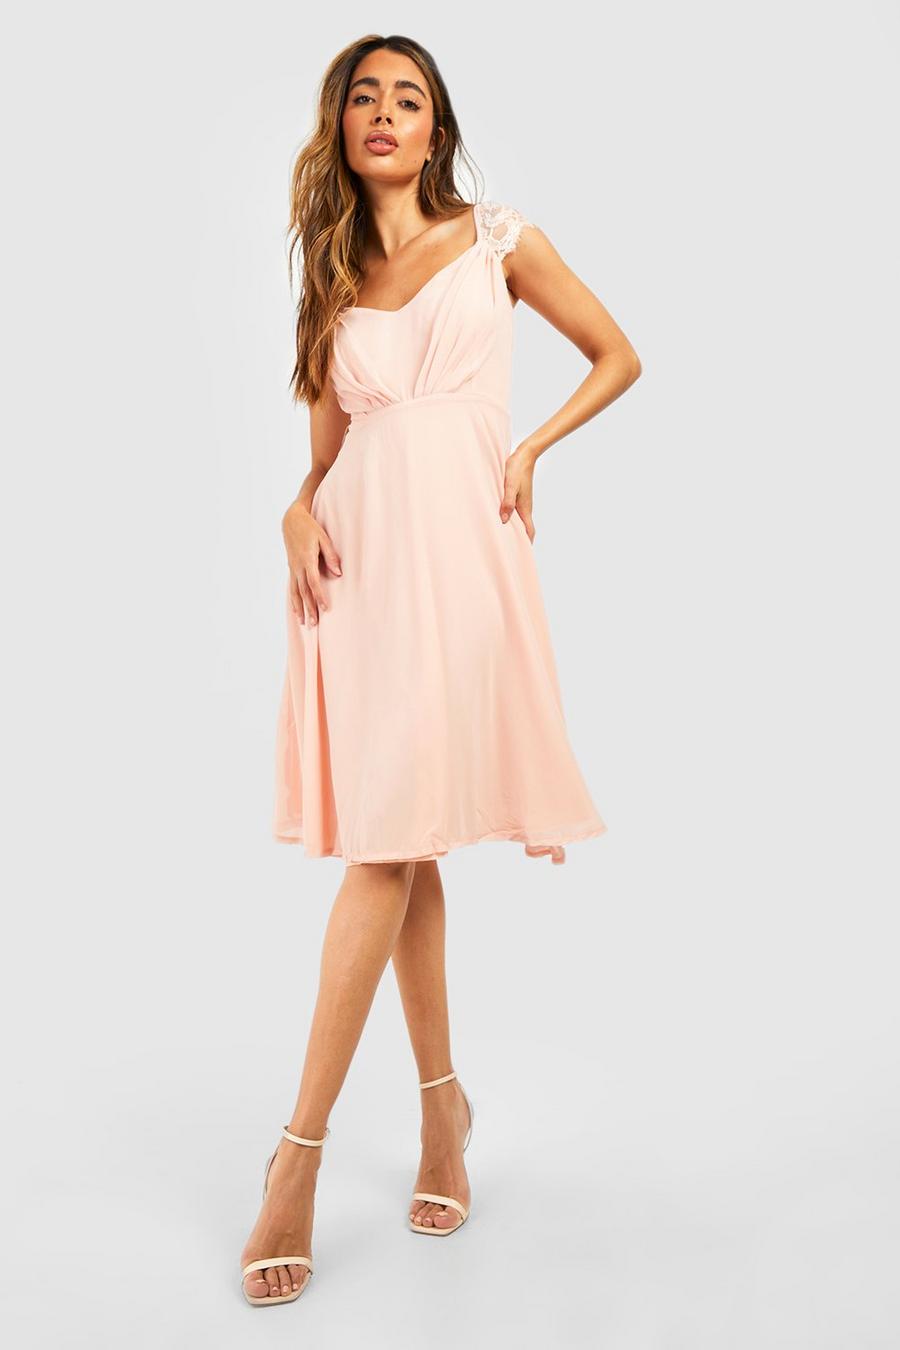 Blush pink Chiffon Lace Midi Skater Bridesmaid Dress